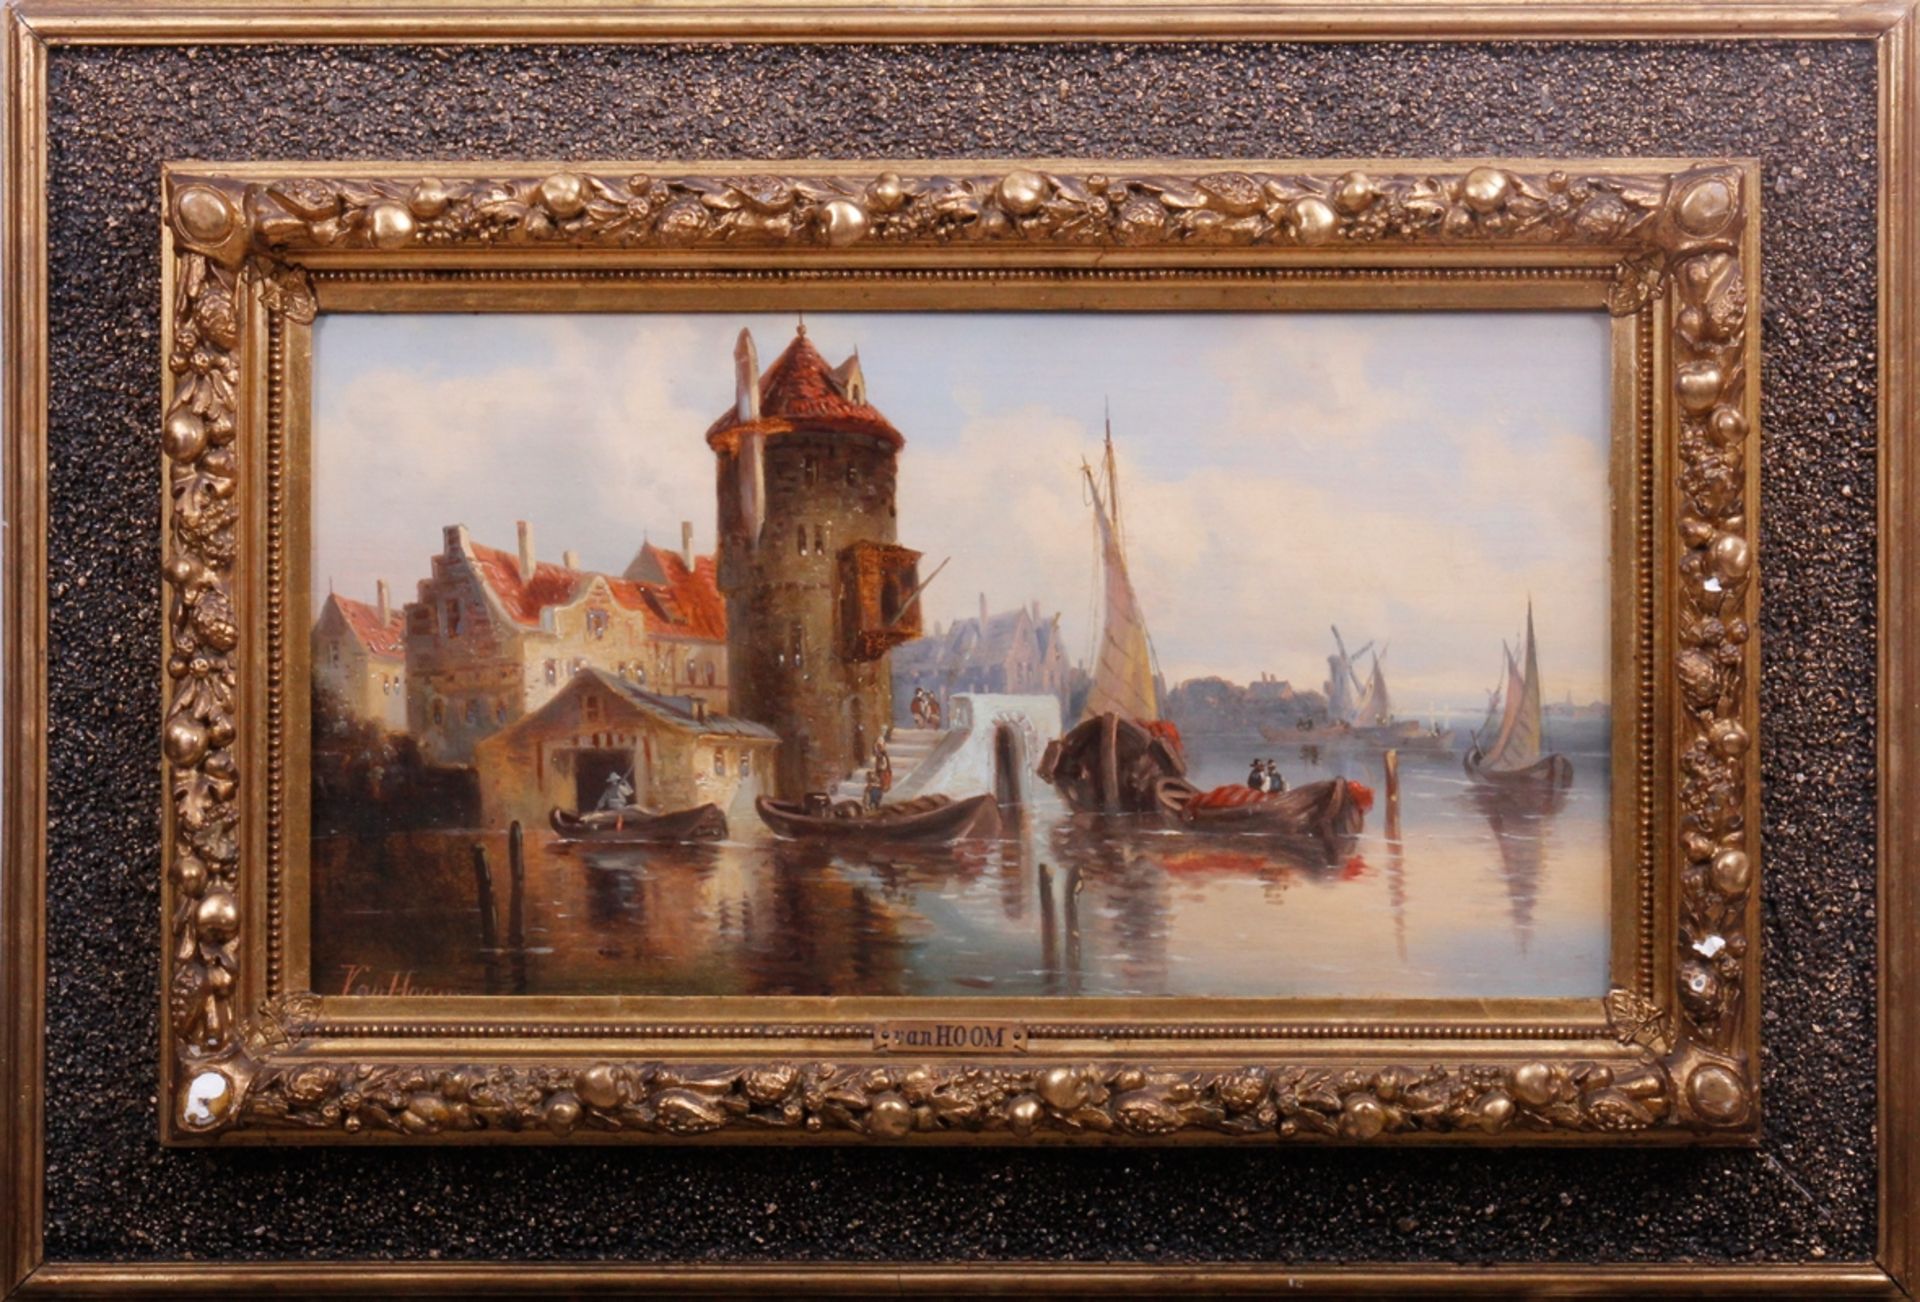 Ludwig Hermann van Hoom (1812 - 1881, niederländischer Marinemaler), "Partie in Utrecht", Öl auf